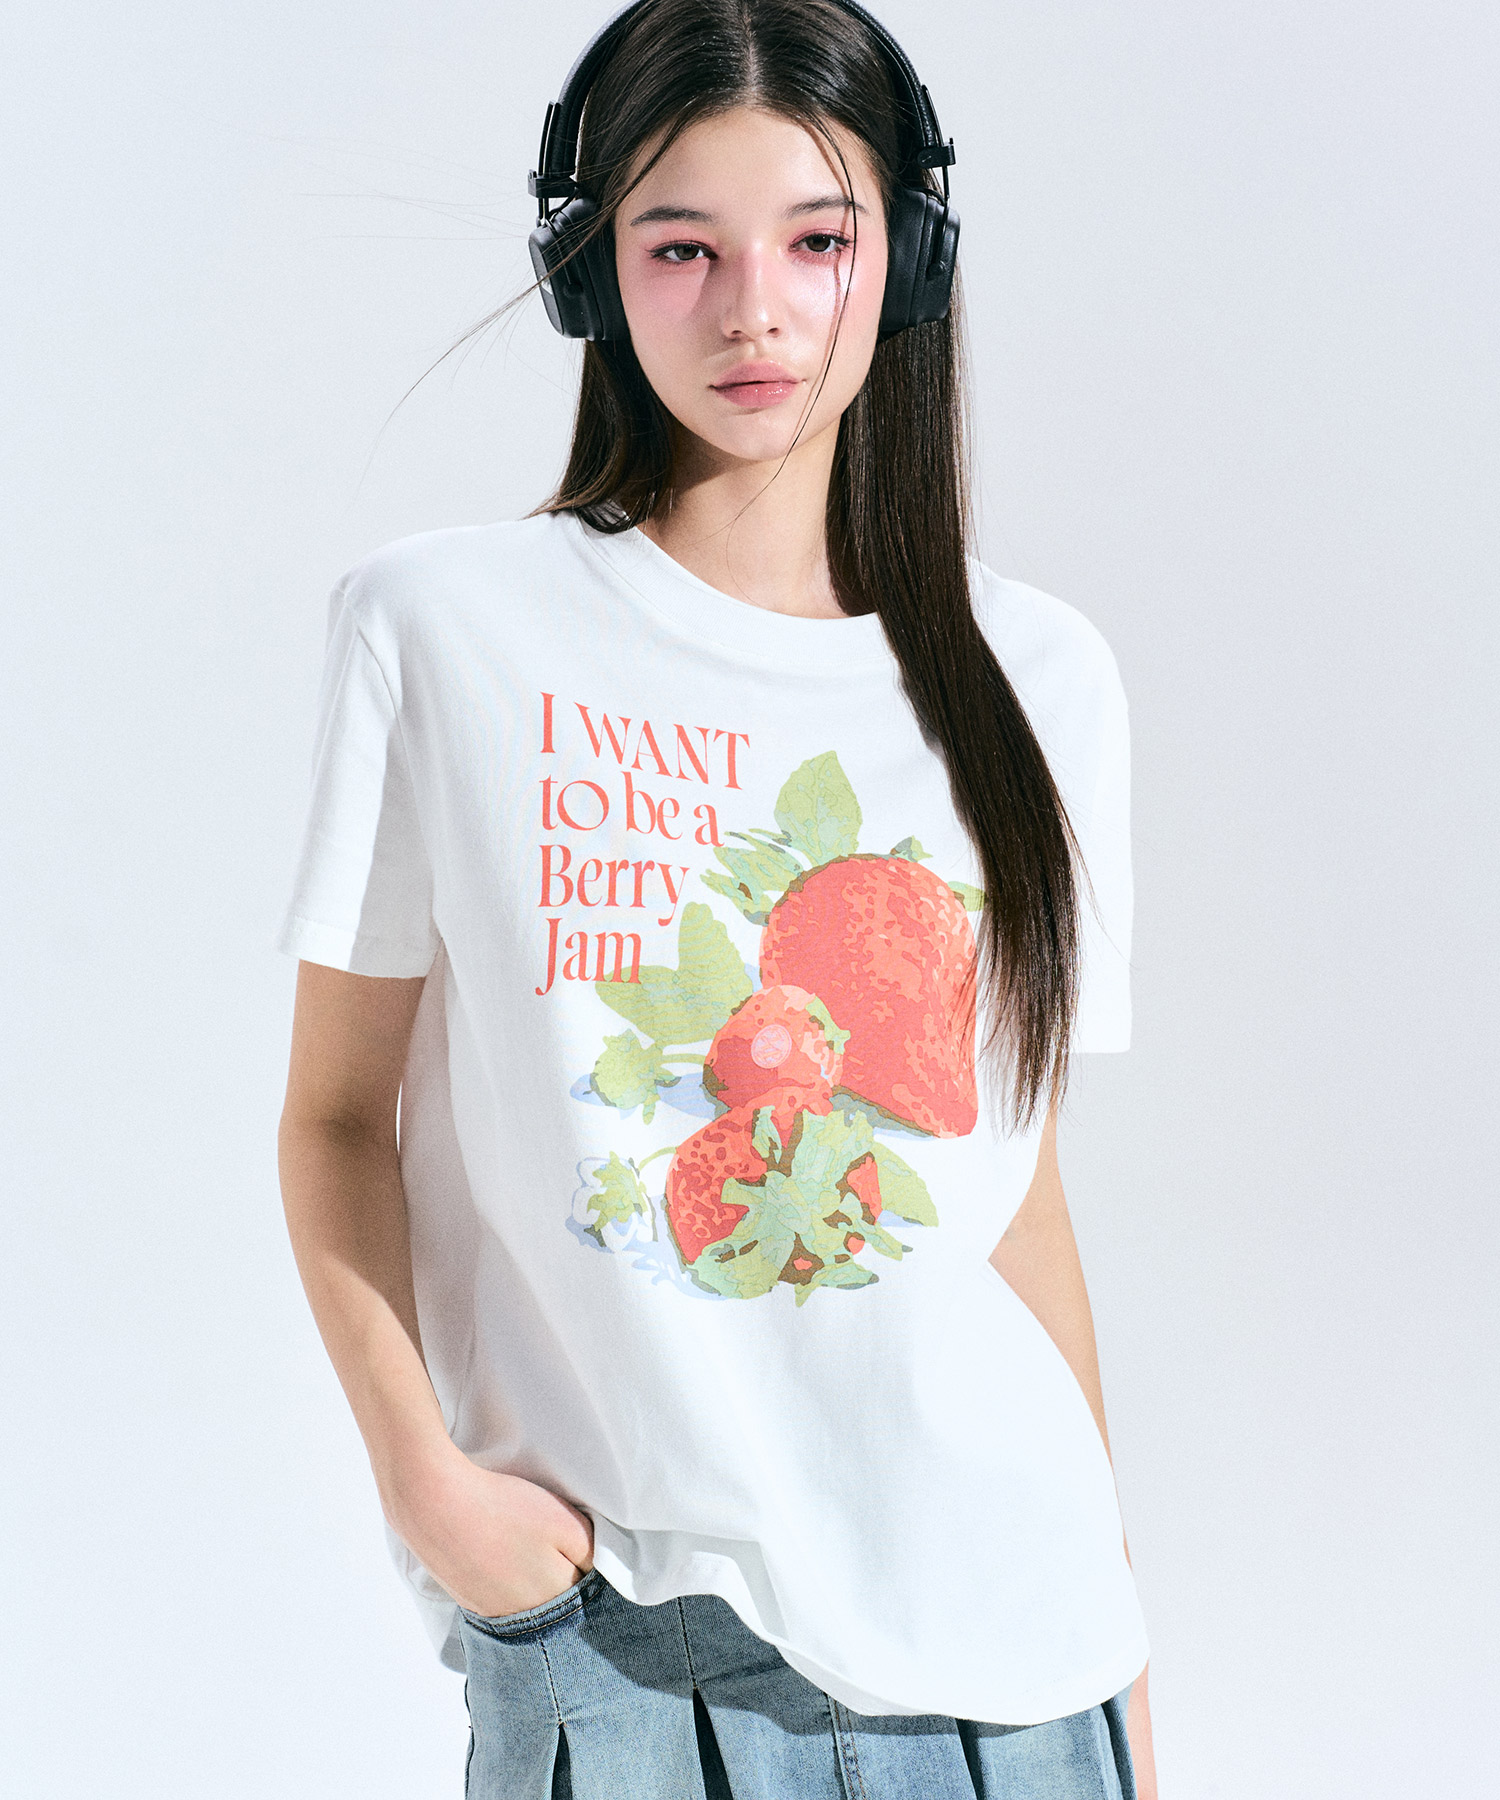 [추천 아이템] 베리 드림 그래픽 티셔츠 [WHITE] 김나영이 착용한 제로플래닛